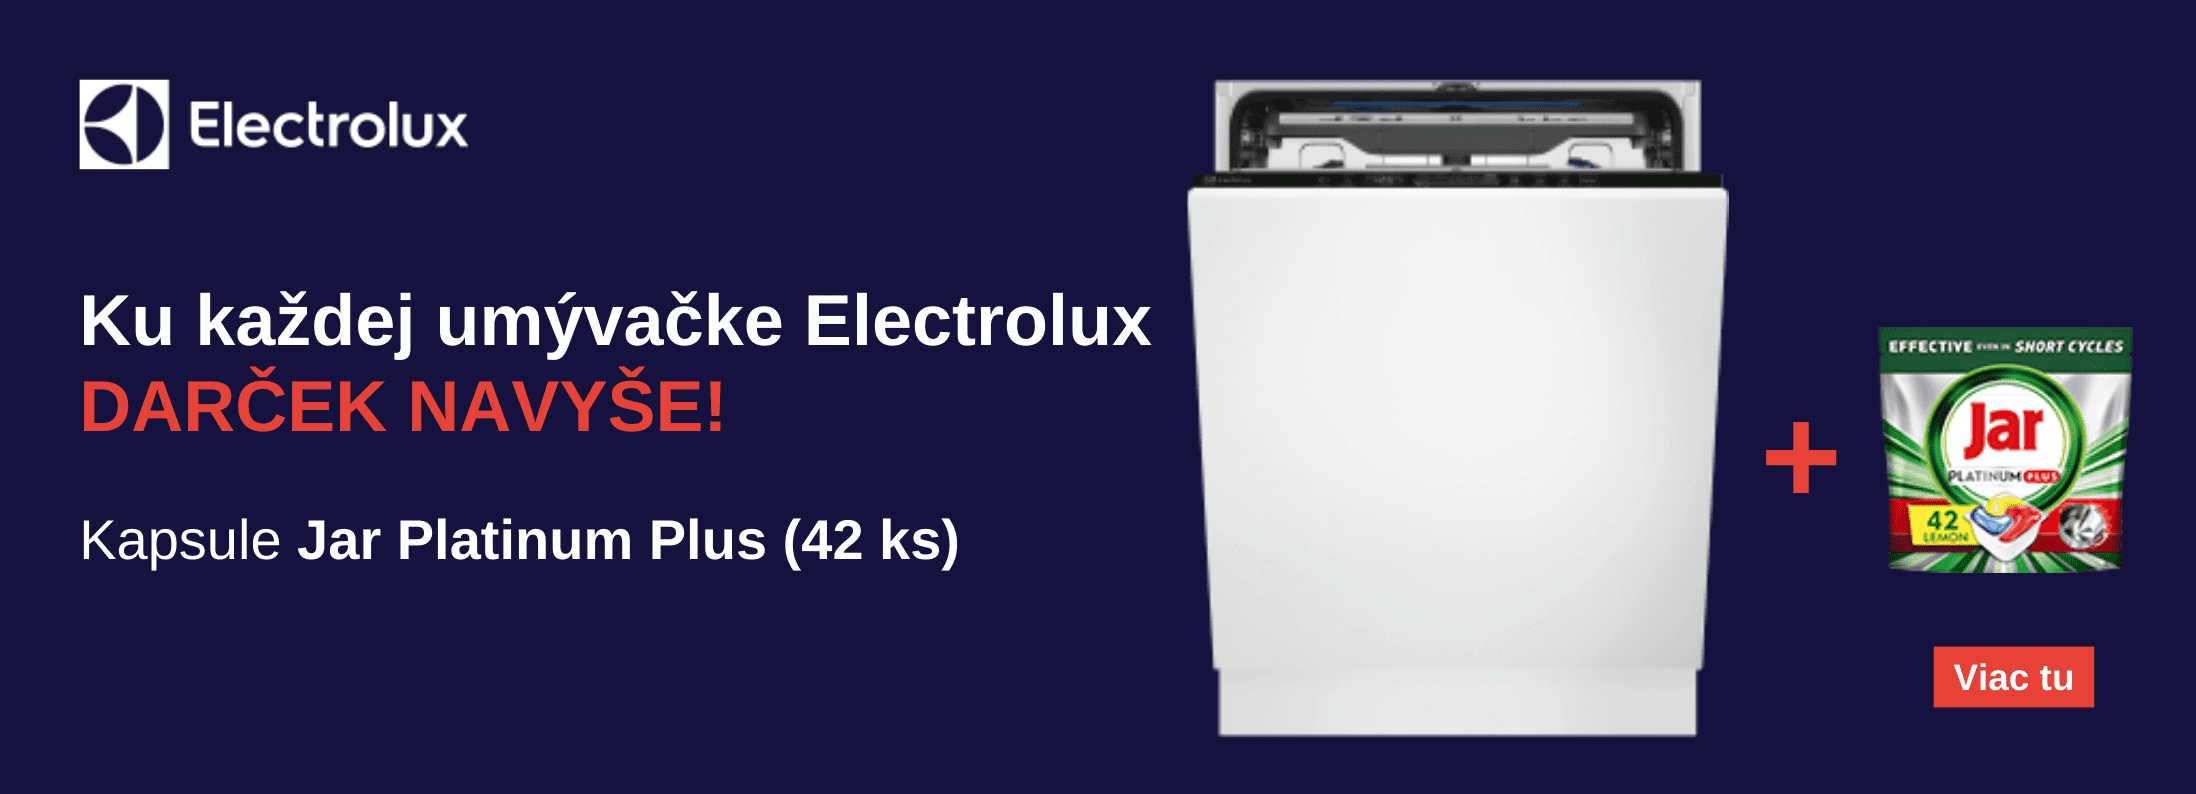 Electrolux - Ku každej umývačke Electrolux darček navyše